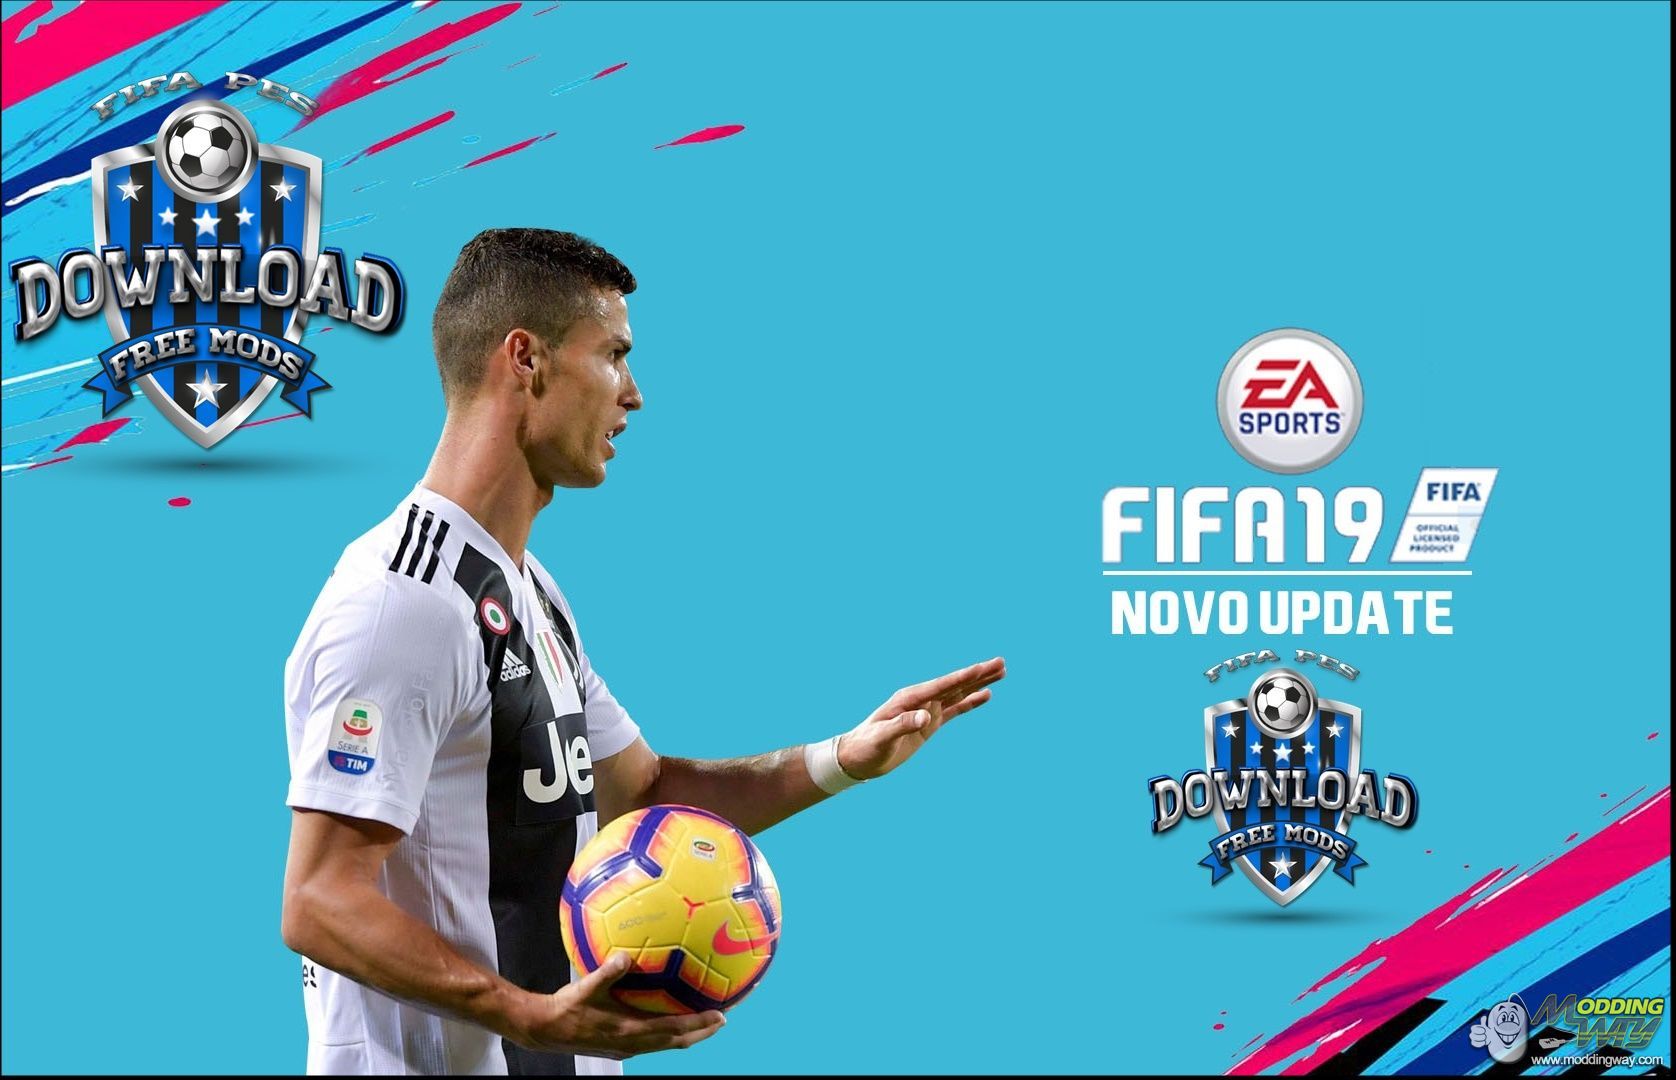 FIFA 18 Free PC Downlaod